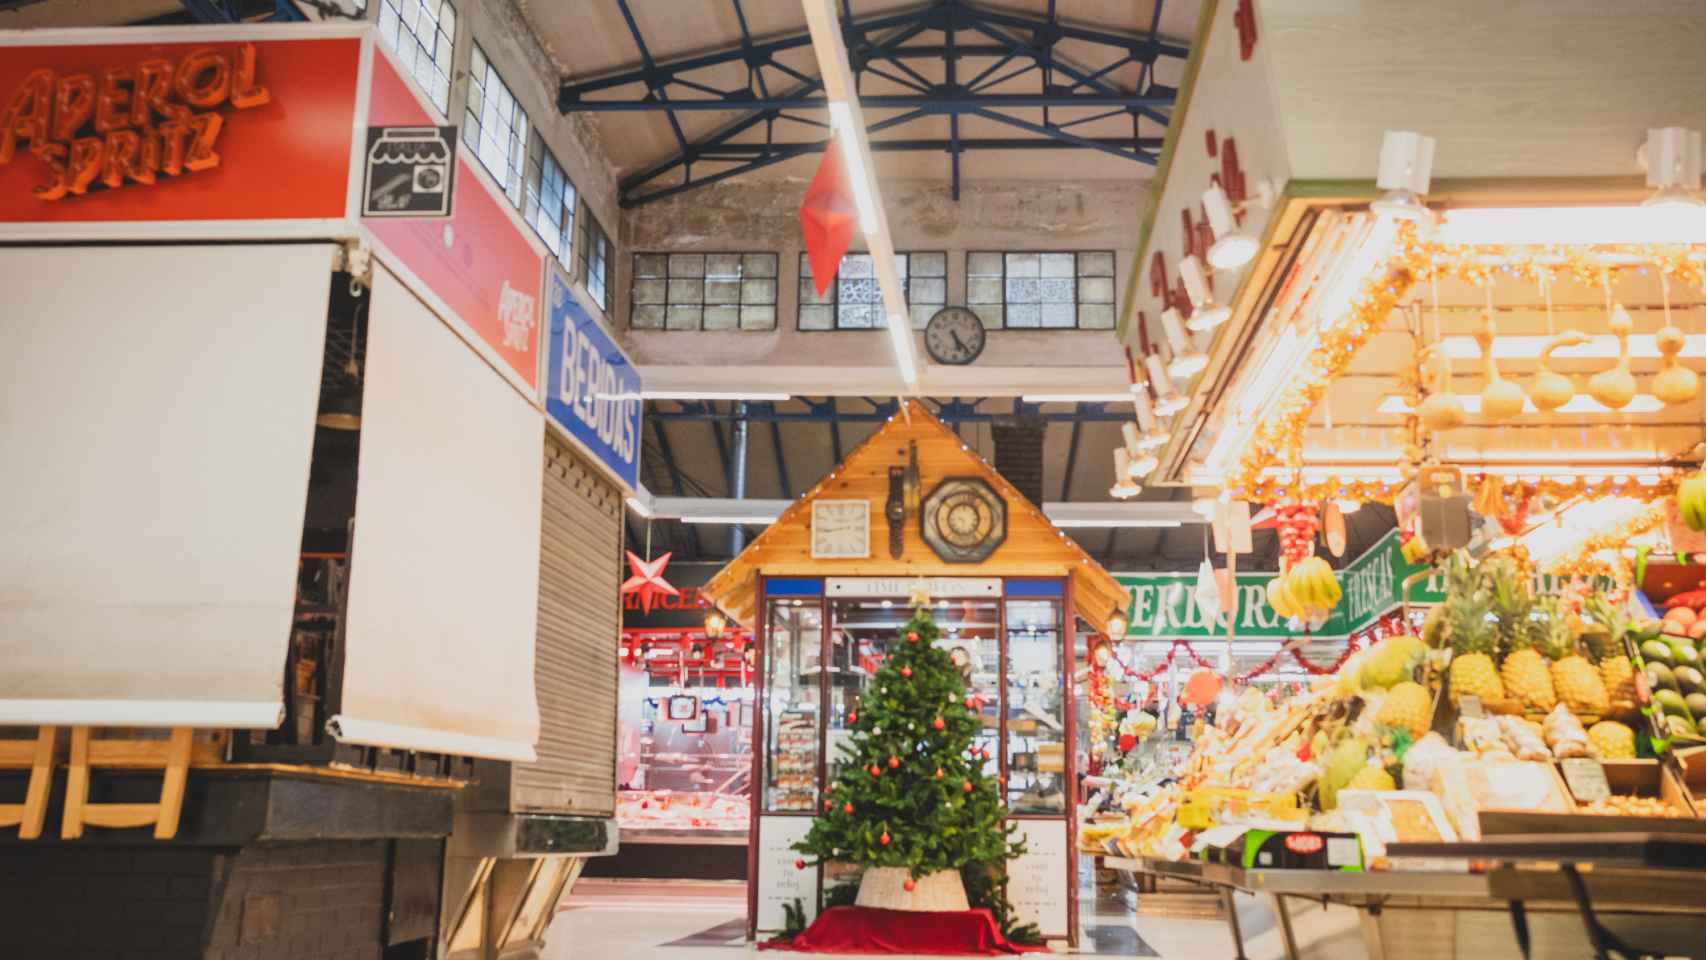 El mercado con decoración navideña en esta época del año.